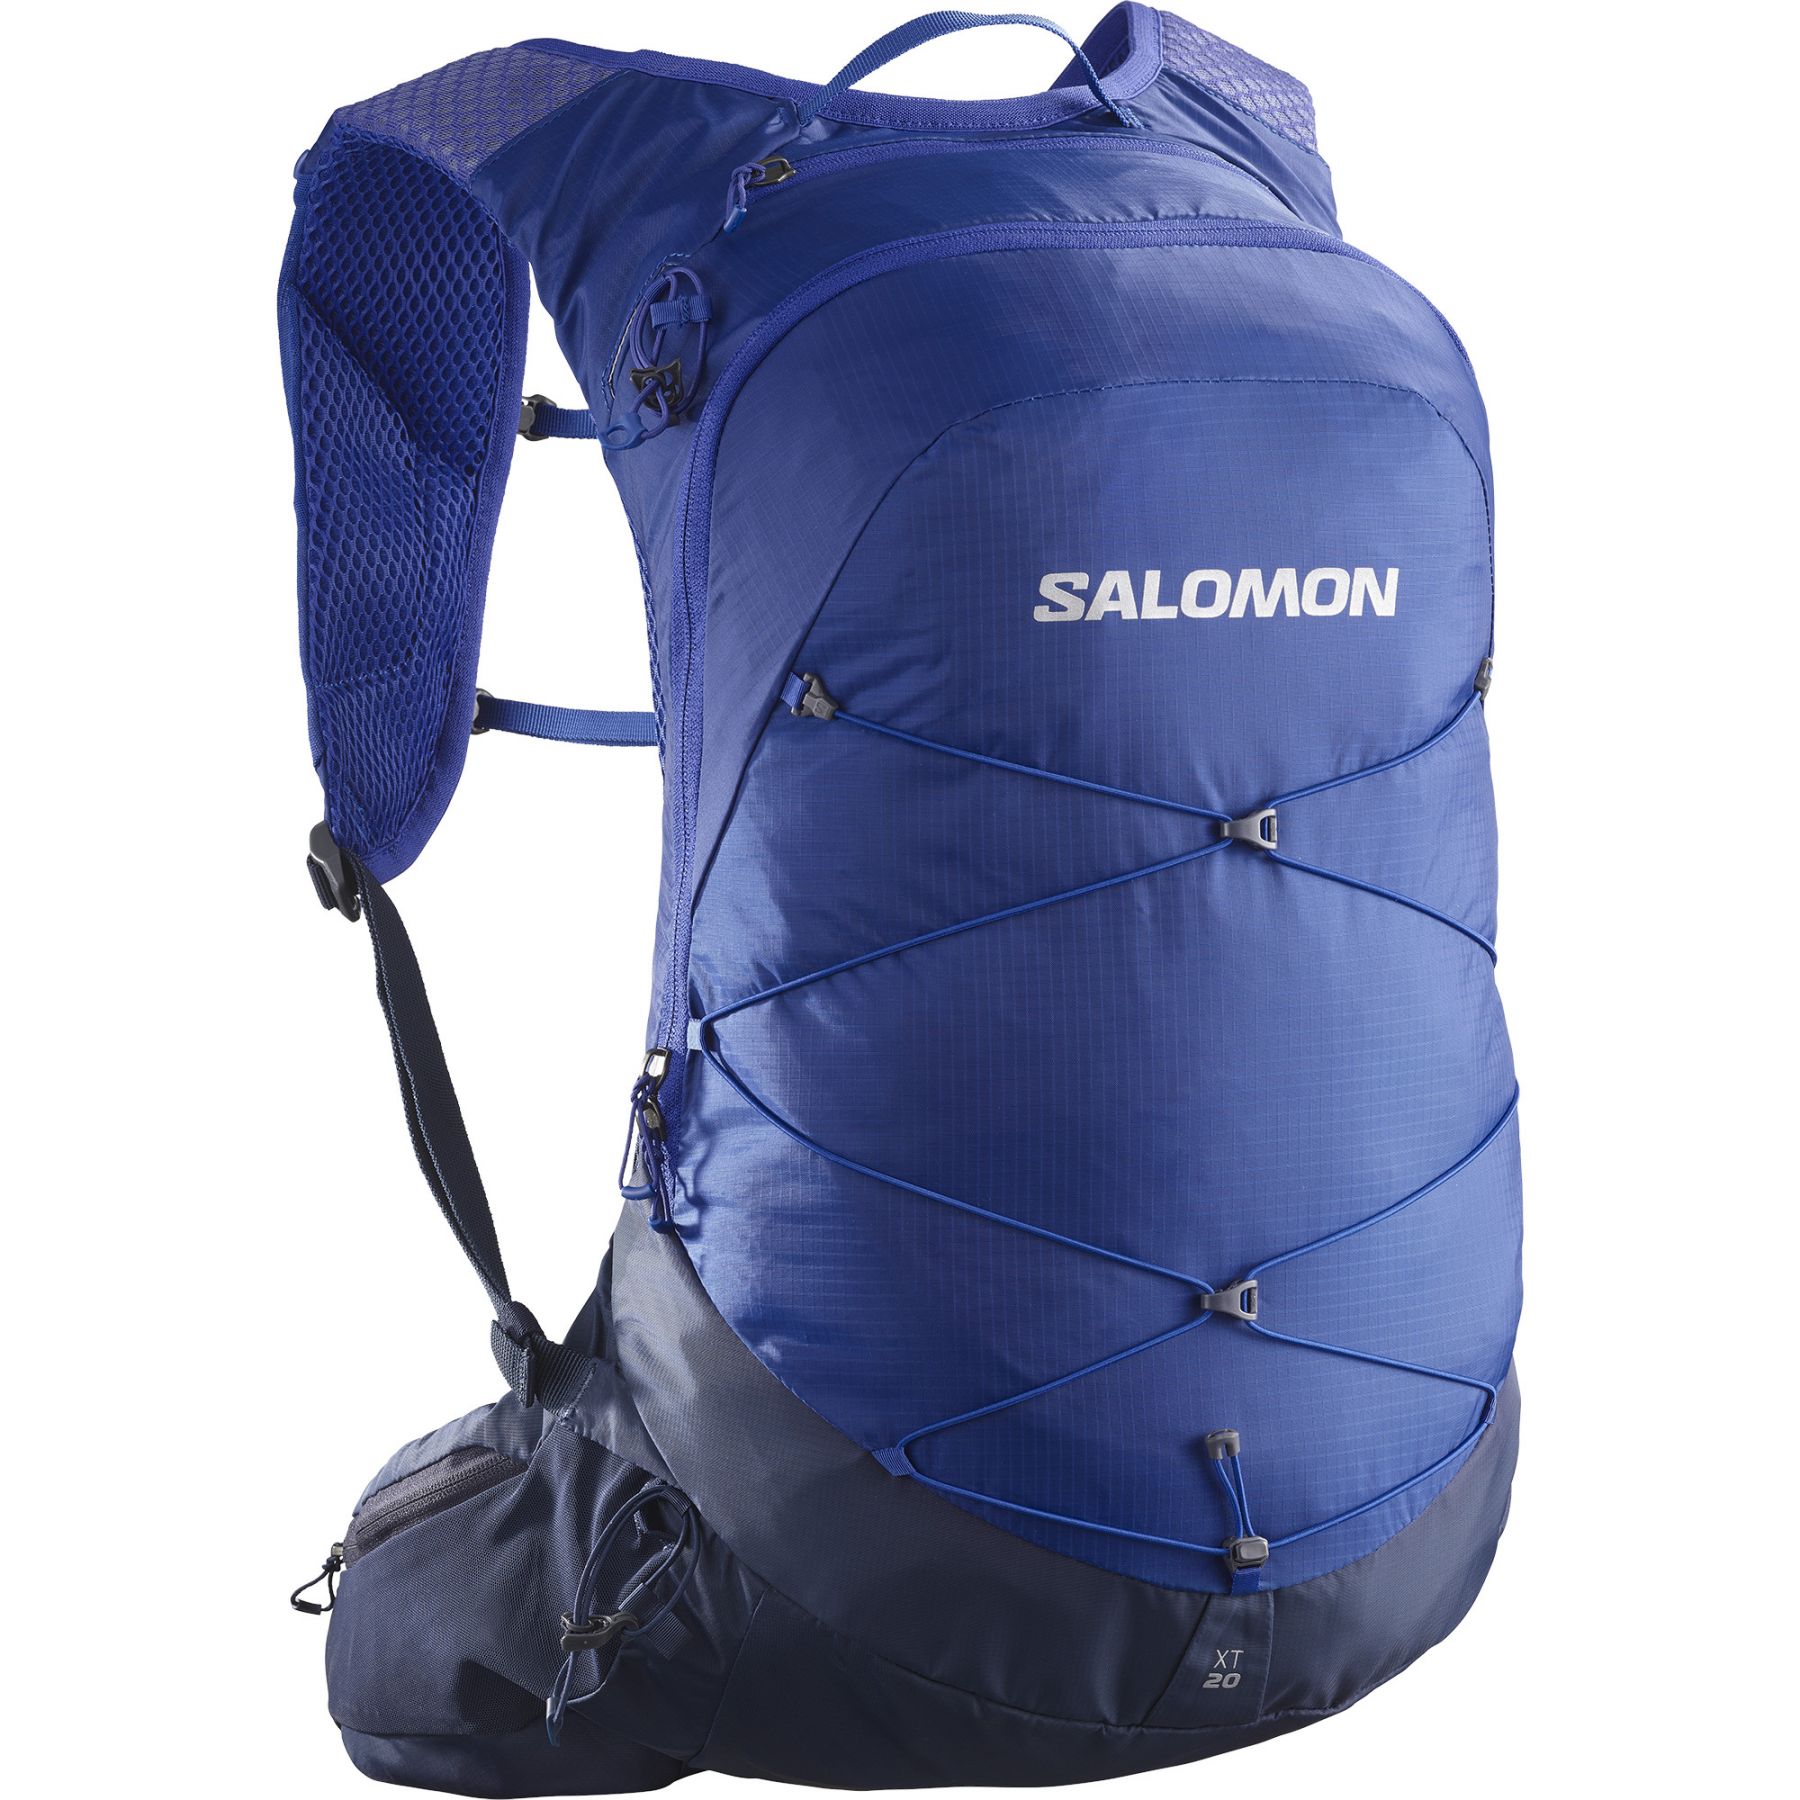 Se Salomon XT 20, rygsæk, blå hos Skisport.dk